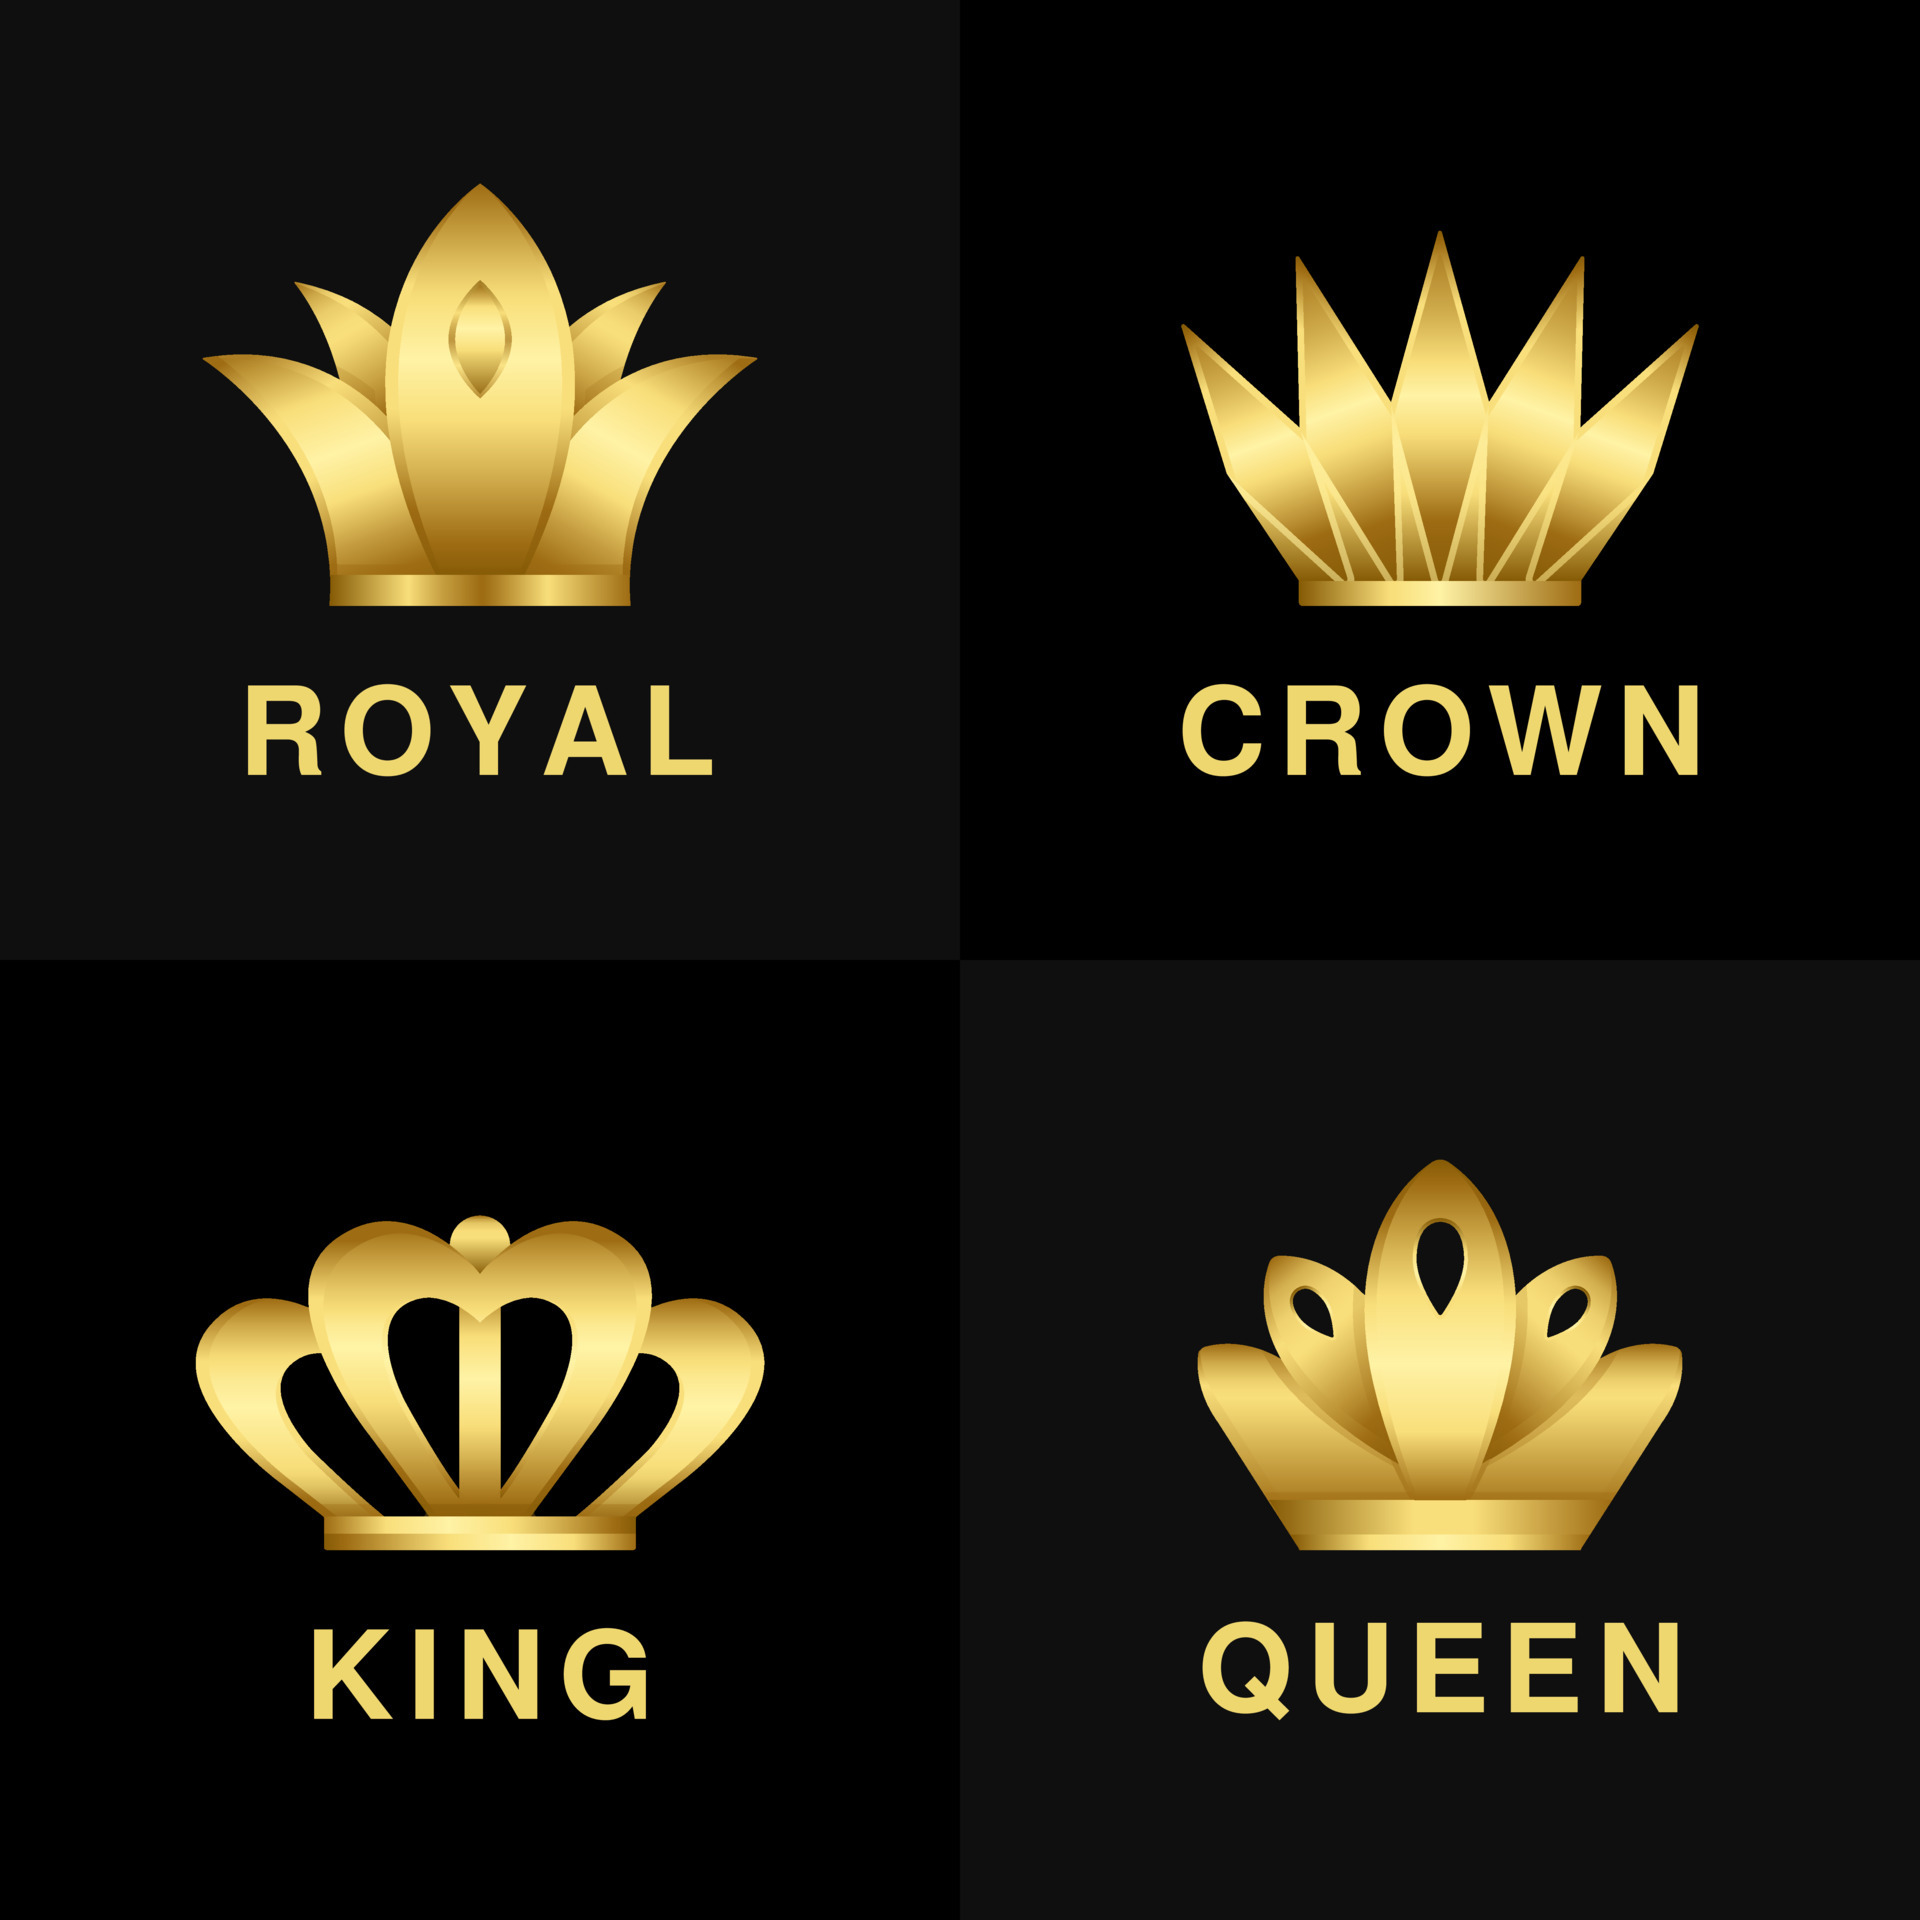 Đón khám phá biểu tượng của Vương quốc hoàng gia trên nền đen với chúng tôi. Sự kết hợp giữa màu vàng rực rỡ và màu đen sang trọng đã tạo nên một tác phẩm nghệ thuật đầy ấn tượng. Hãy để cho vẻ đẹp hoàng gia này làm say lòng quý khách.